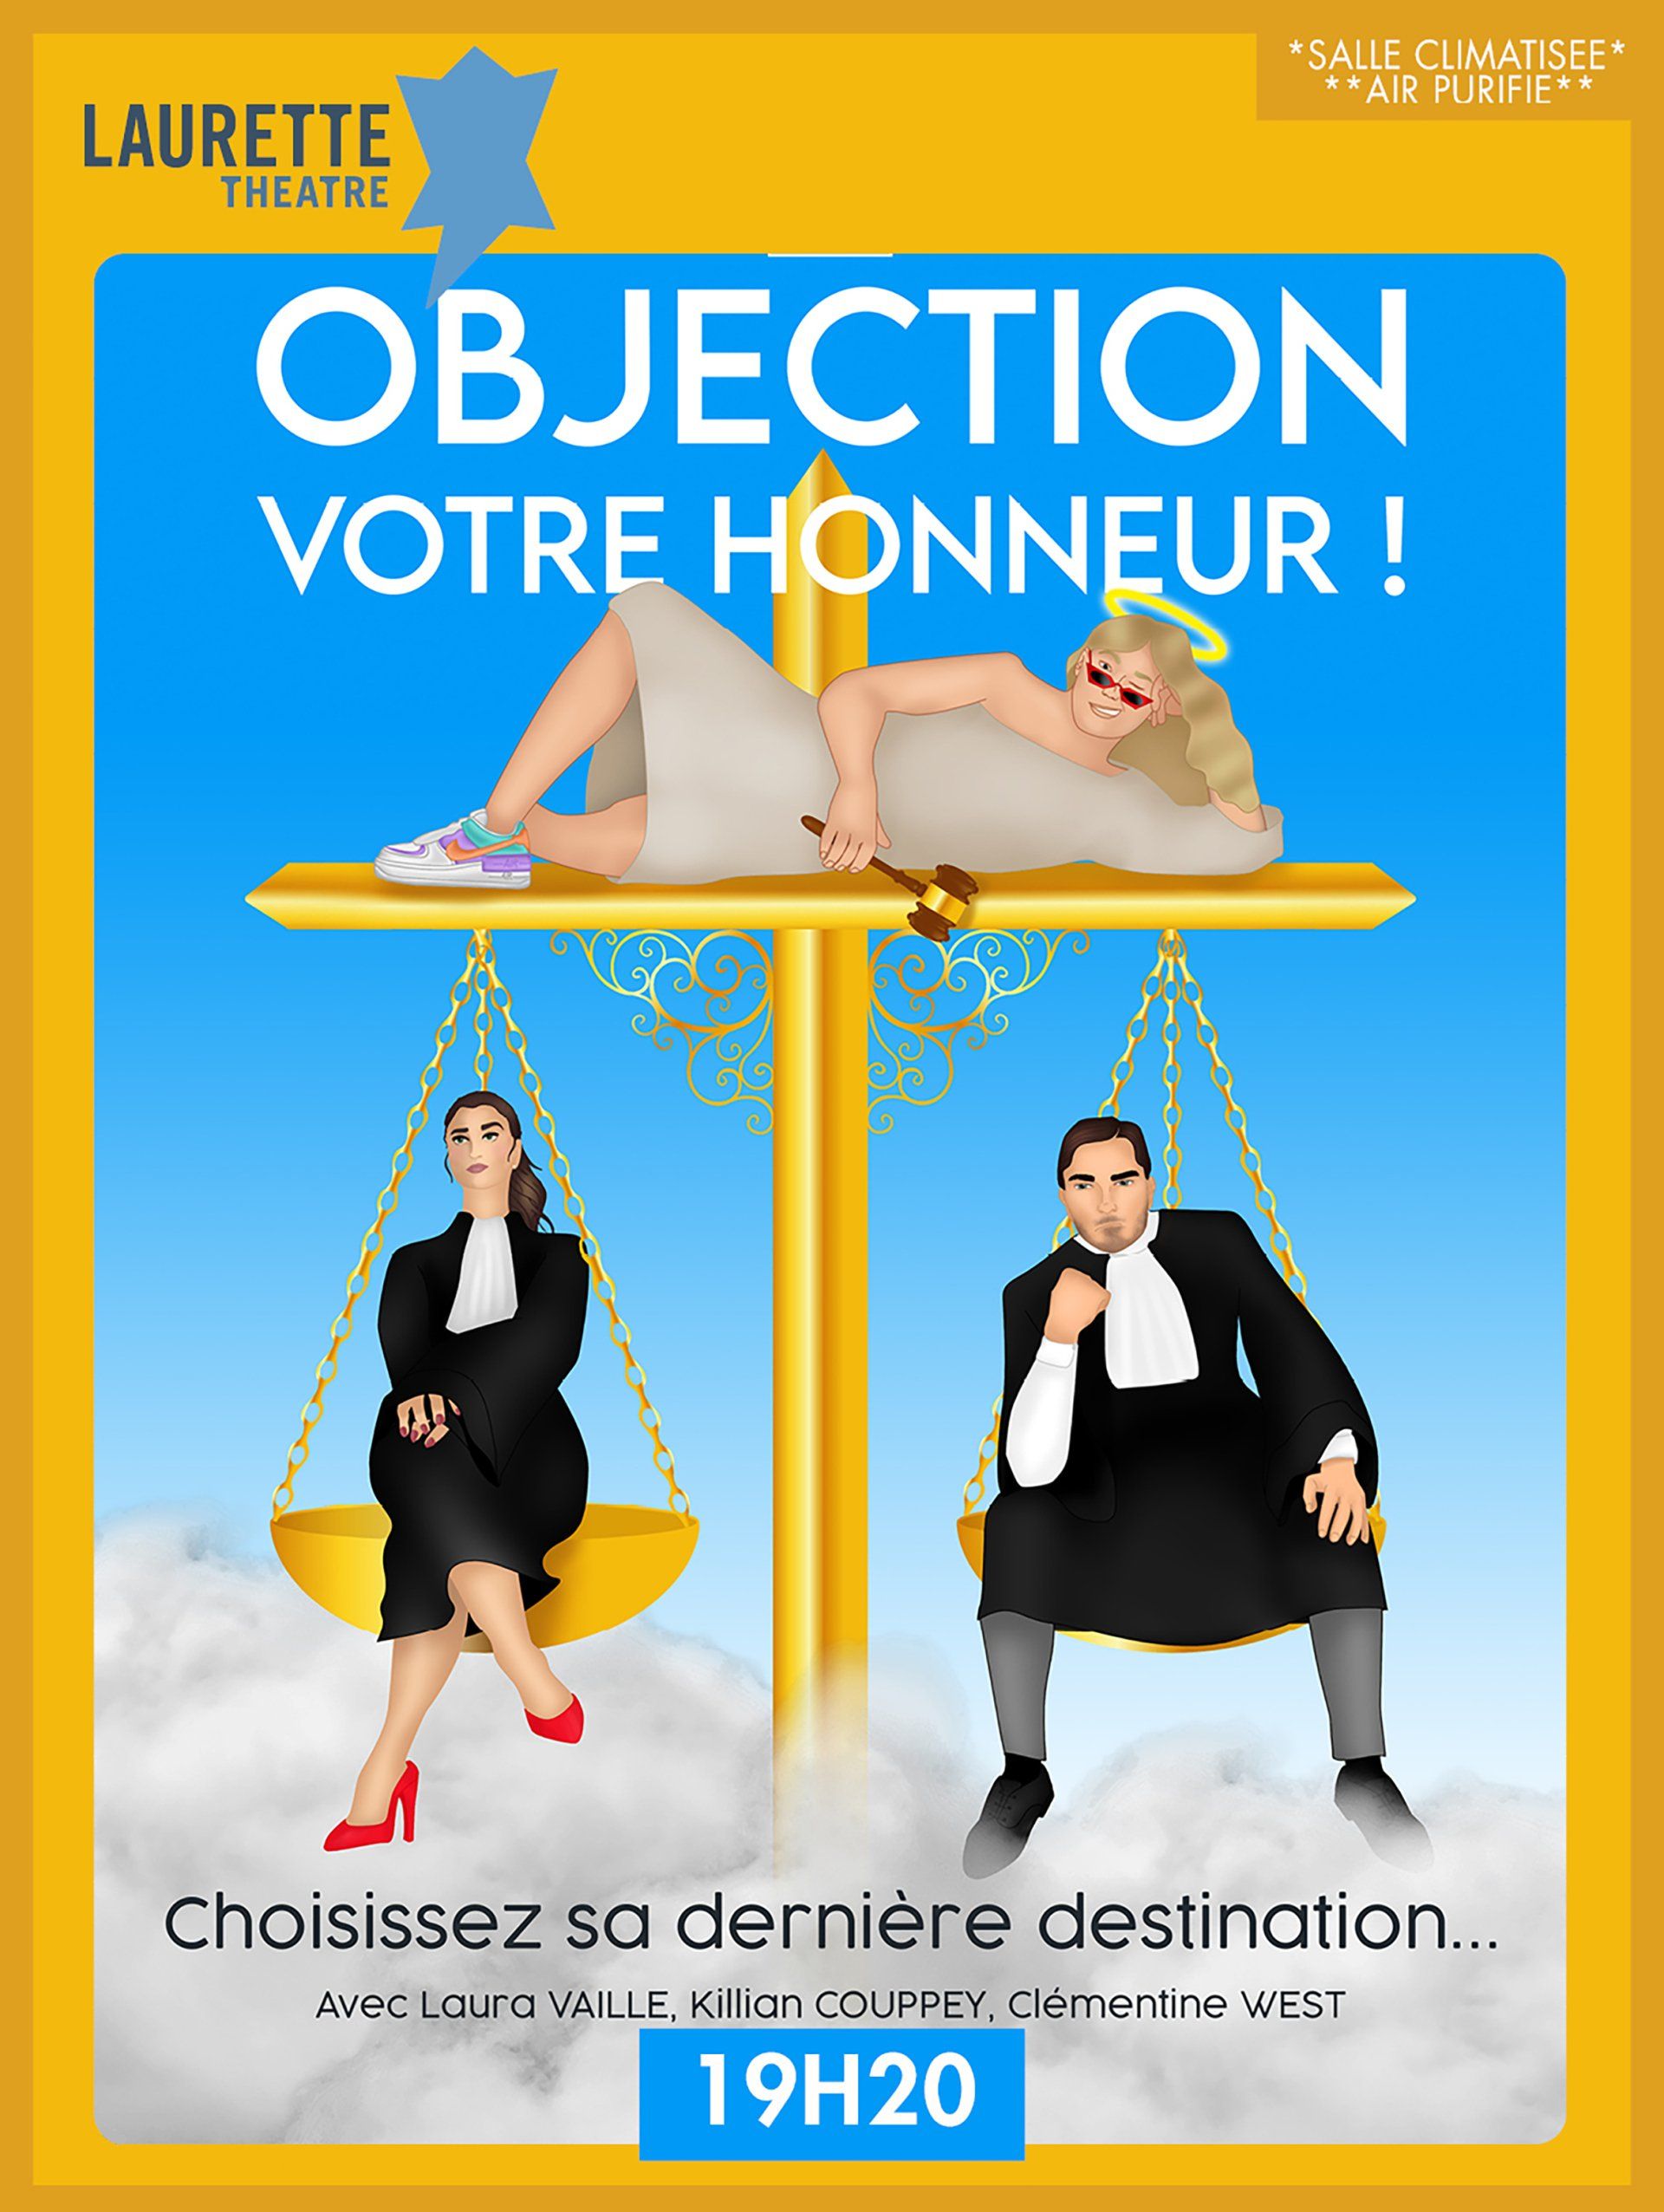 une affiche pour objection votre honneur montre une femme allongée sur une balance et un homme assis sur une balance